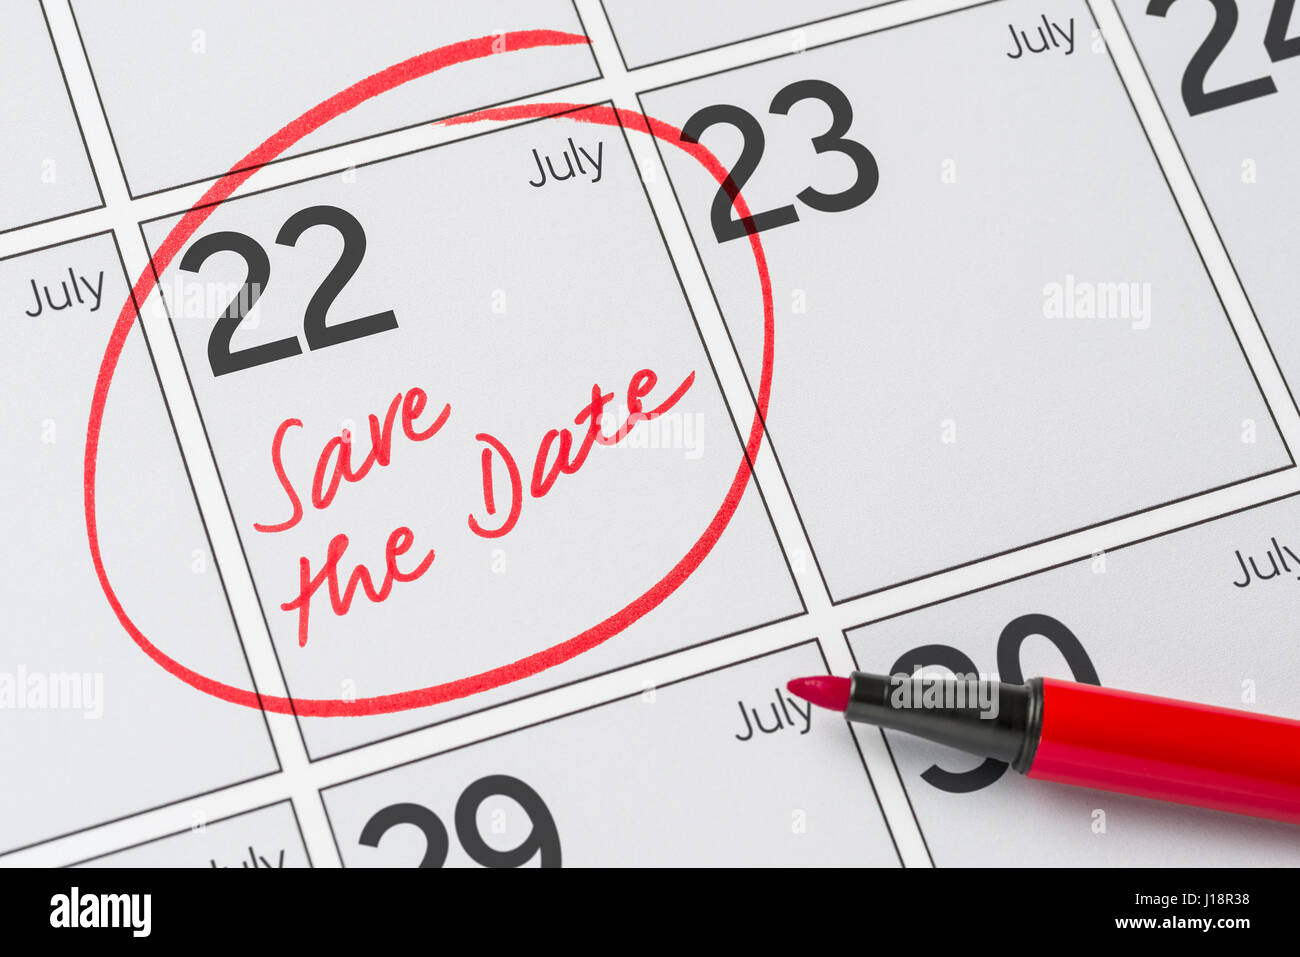 Enregistrer la date inscrite sur un calendrier - Juillet 22 Banque D'Images